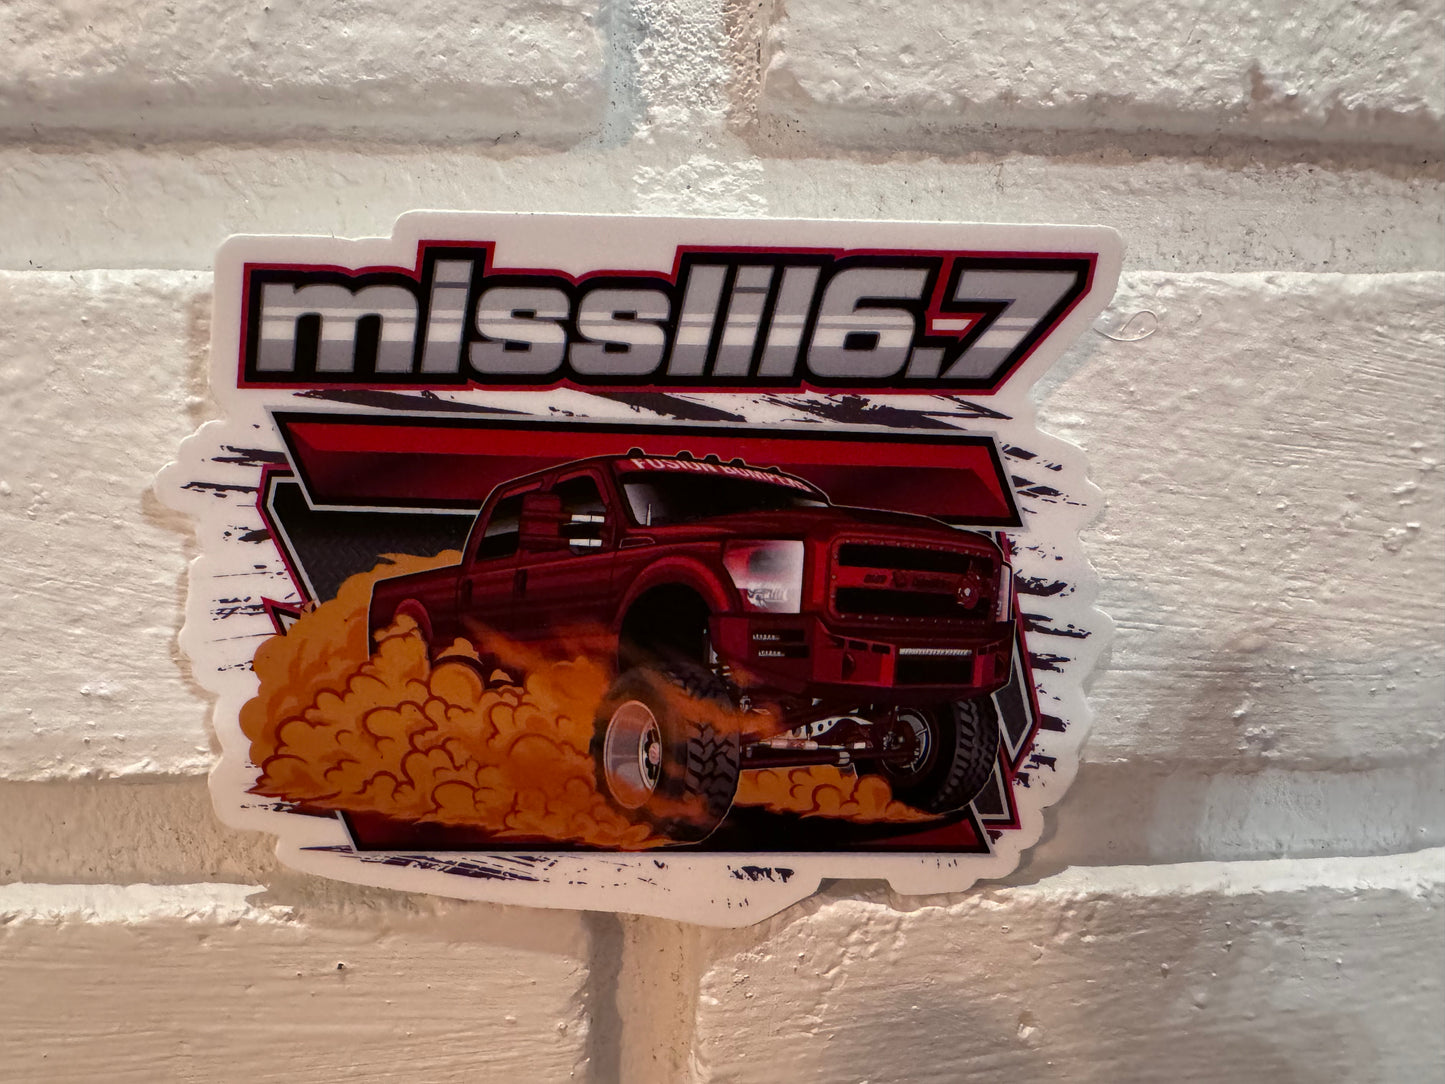 Misslil6.7 Truck Sticker